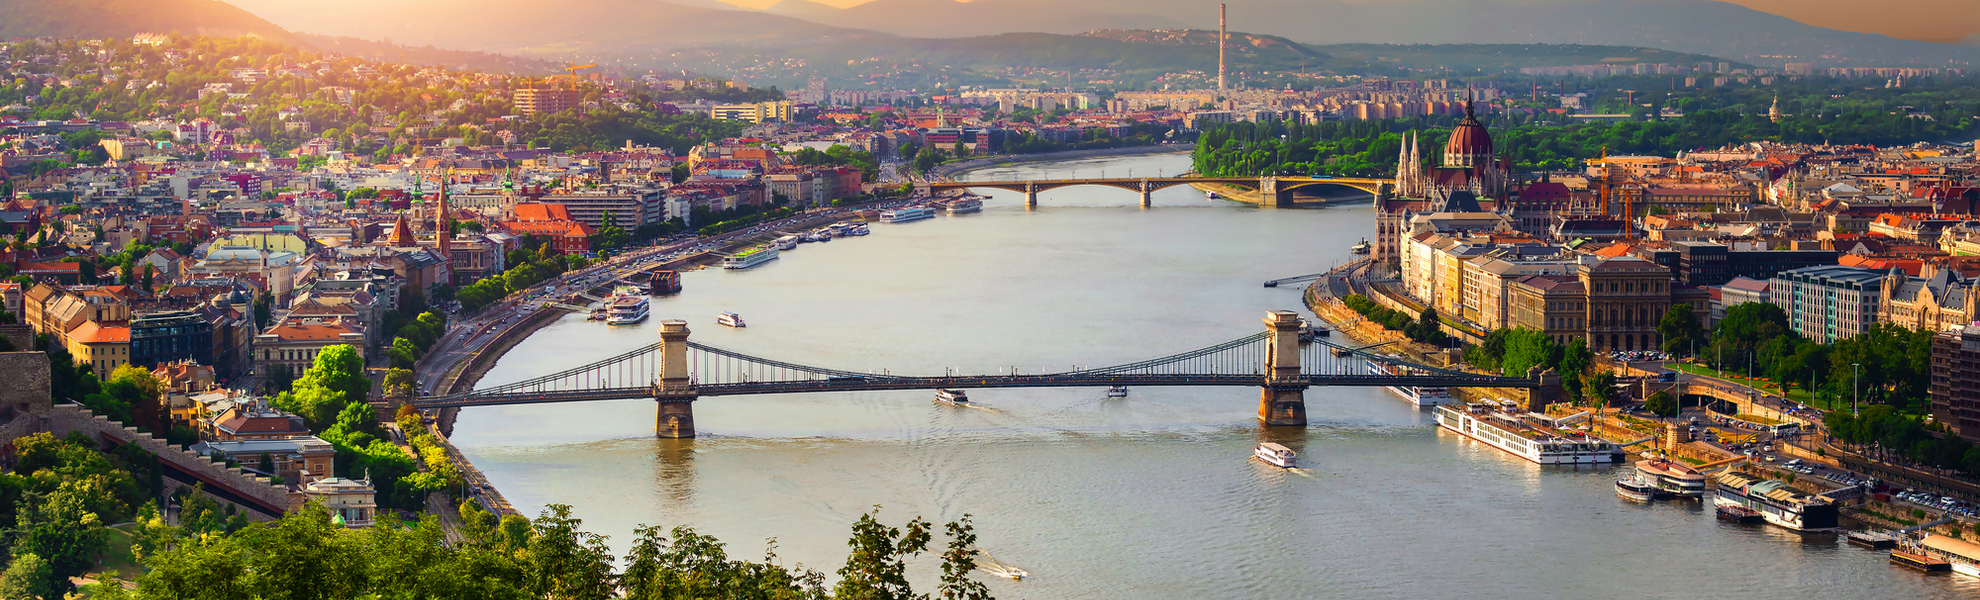 Panorama von Budapest in Ungarn